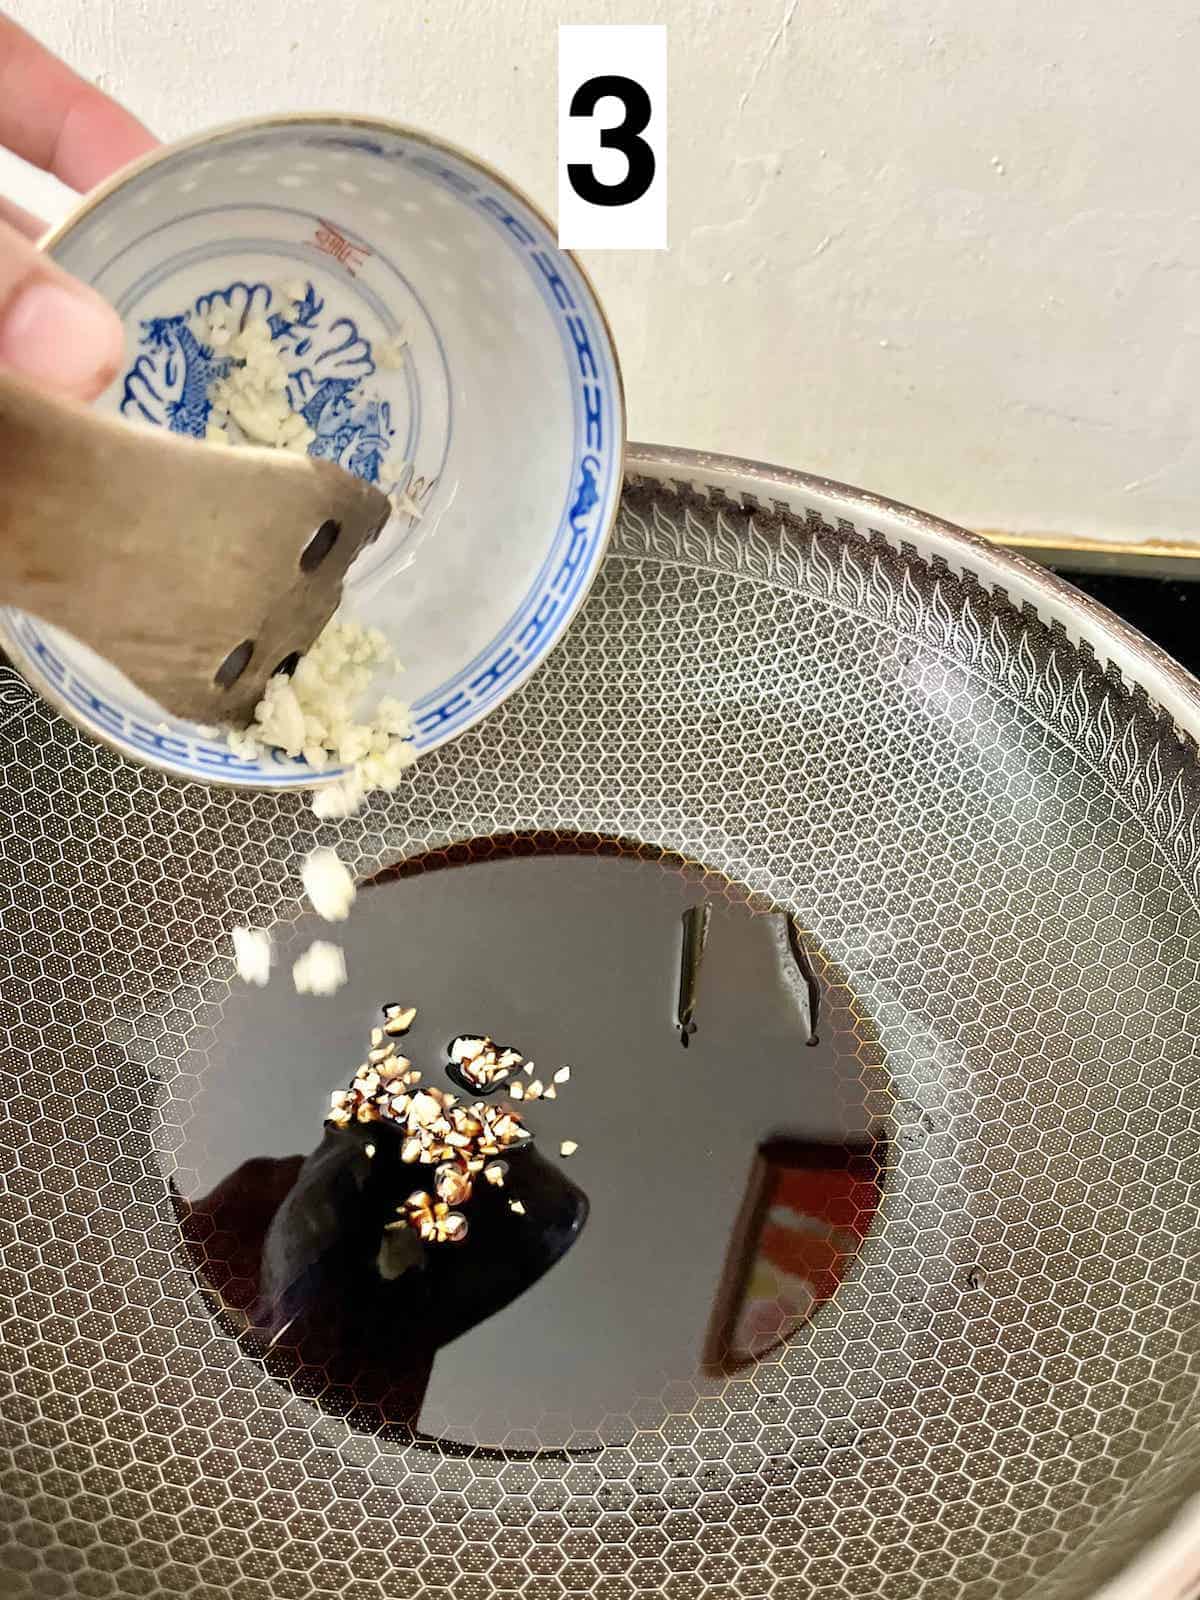 Stir-frying garlic in teriyaki sauce.